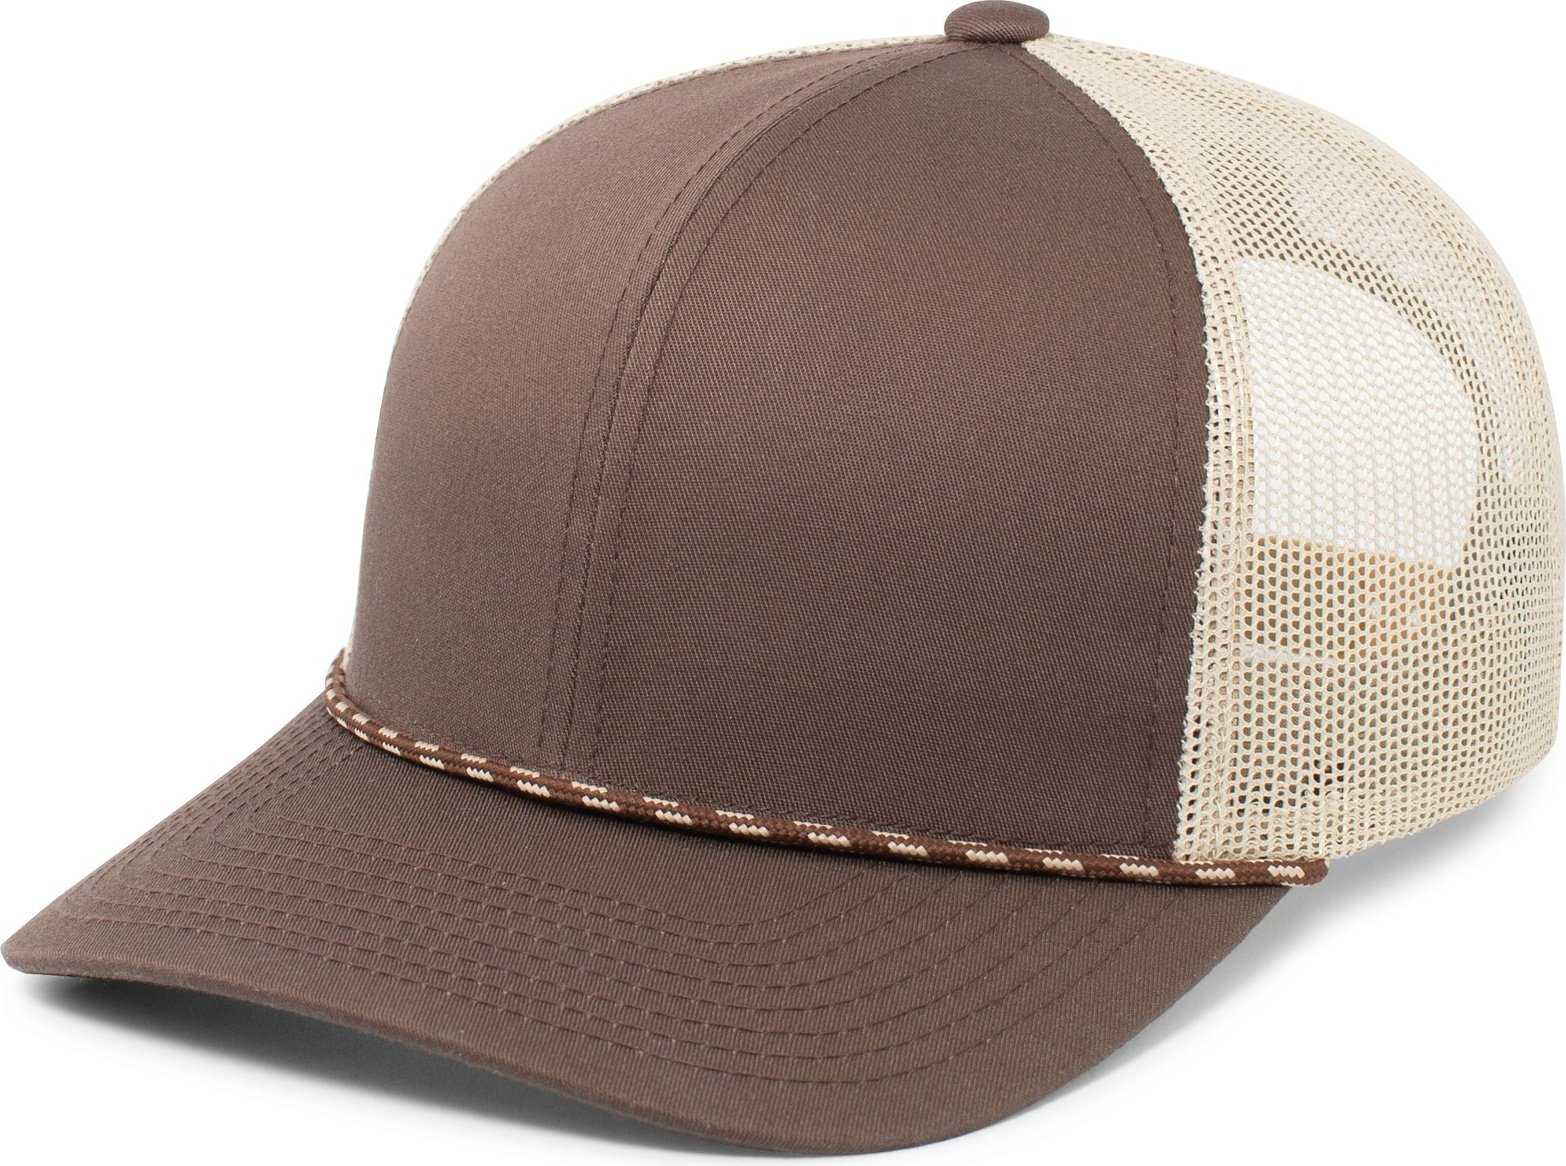 Pacific Headwear 104BR Trucker Snapback Braid Cap - Brown Khaki Brown - HIT a Double